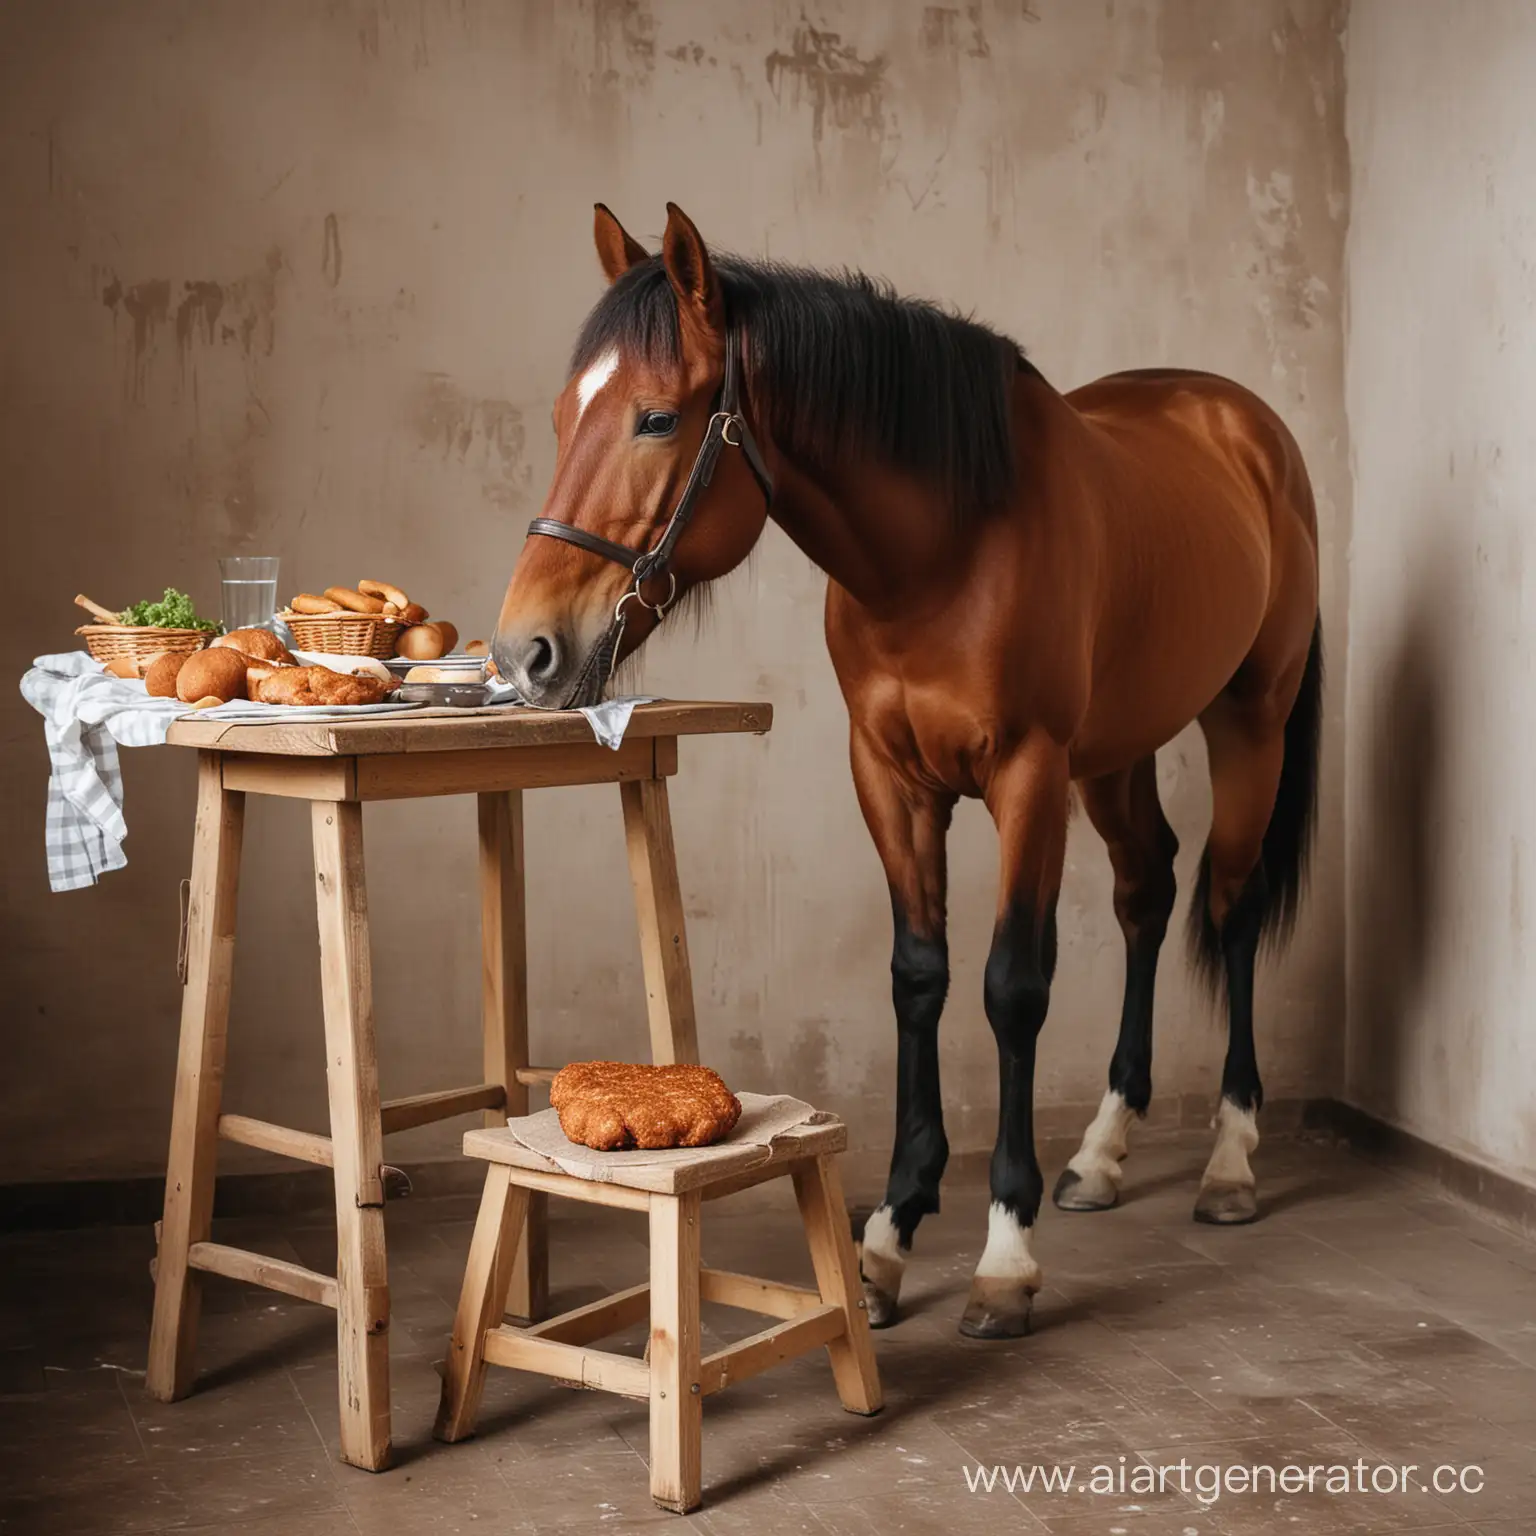 конь сидит на табурете и ест котлеты